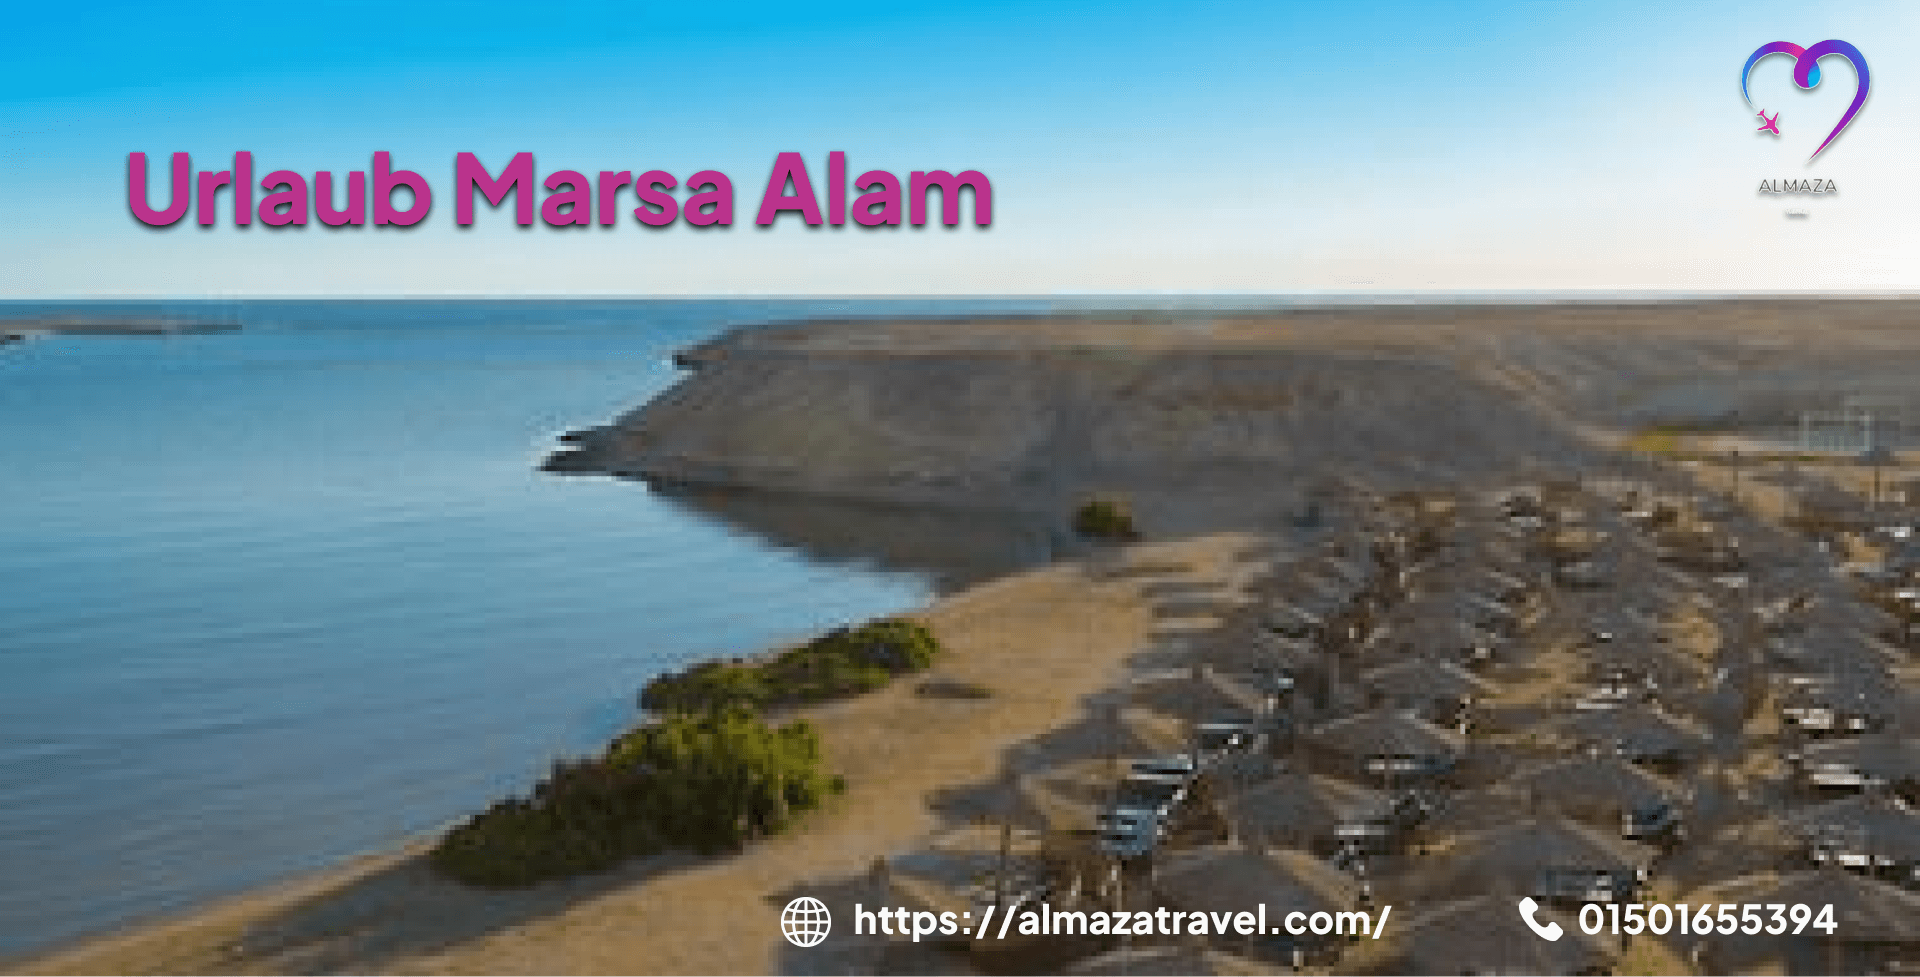 Urlaub Marsa Alam